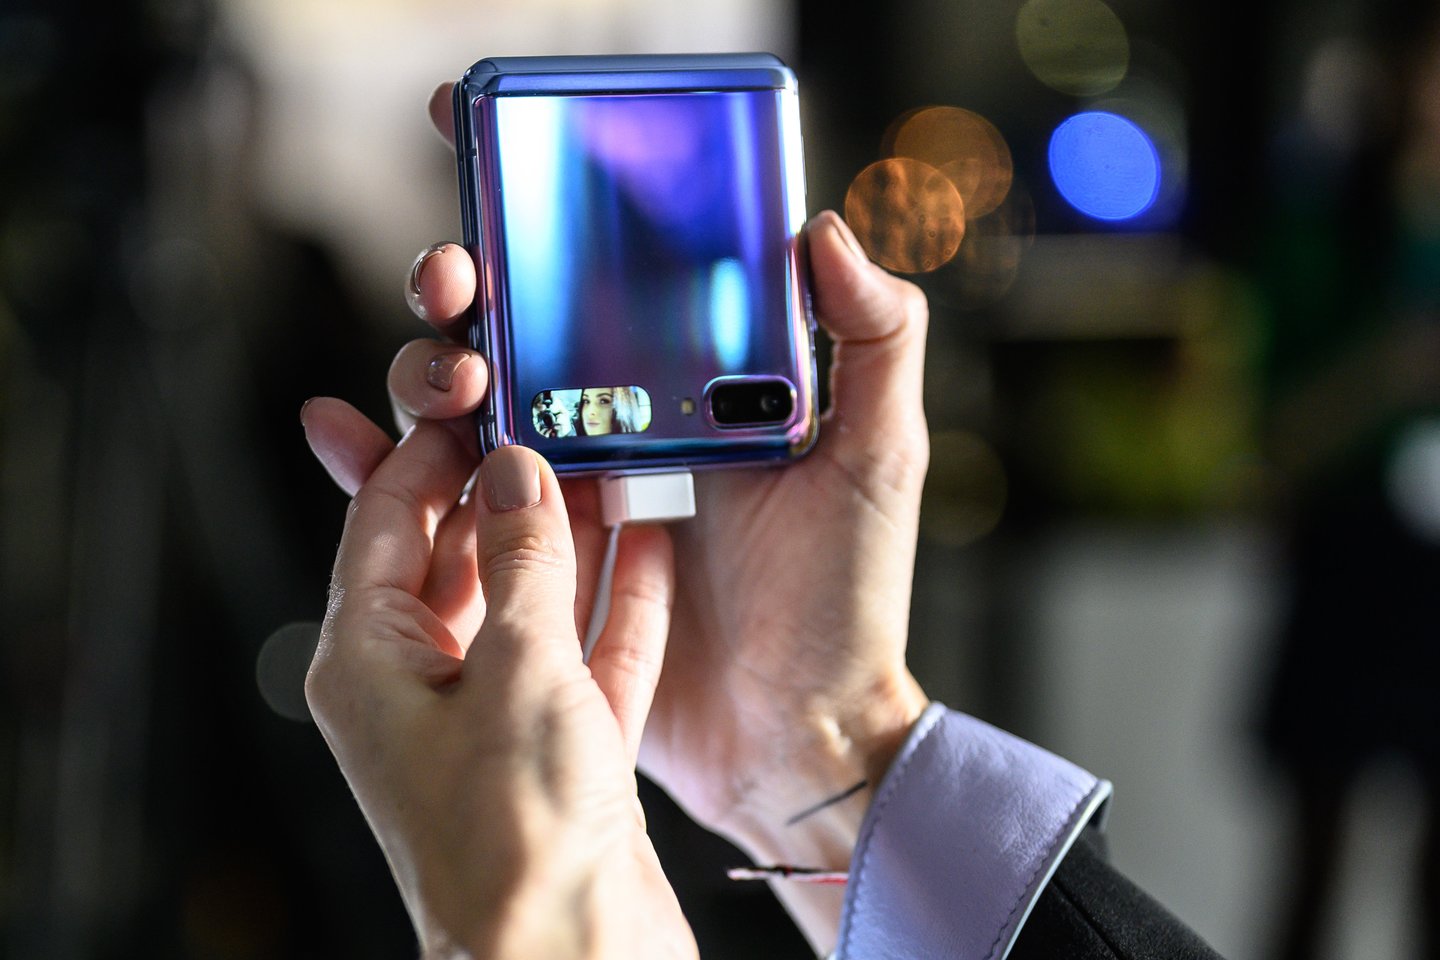  Penktadienio vakare į „Topo centrą“ užsukusieji galėjo pirmieji išvysti naujausią „Samsung Galaxy Z Flip“ telefoną ir iš pirmų lūpų išgirsti jį jau išbandžiusių žvaigždžių įspūdžius.